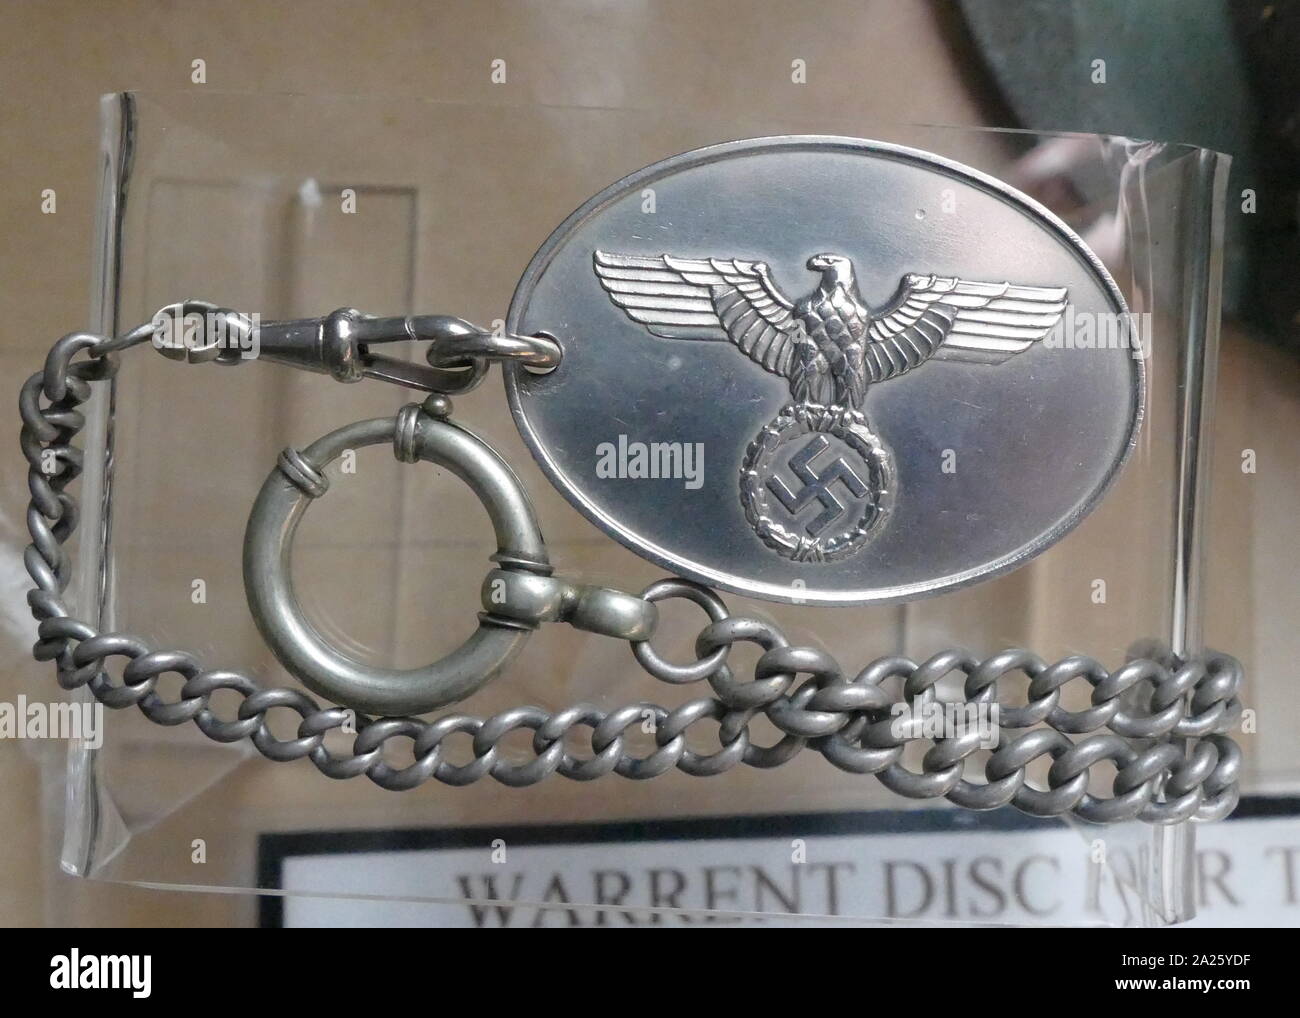 Haftbefehl Disc durch Beamte der Kriminalpolizei während des Zweiten Weltkriegs durchgeführt Stockfoto